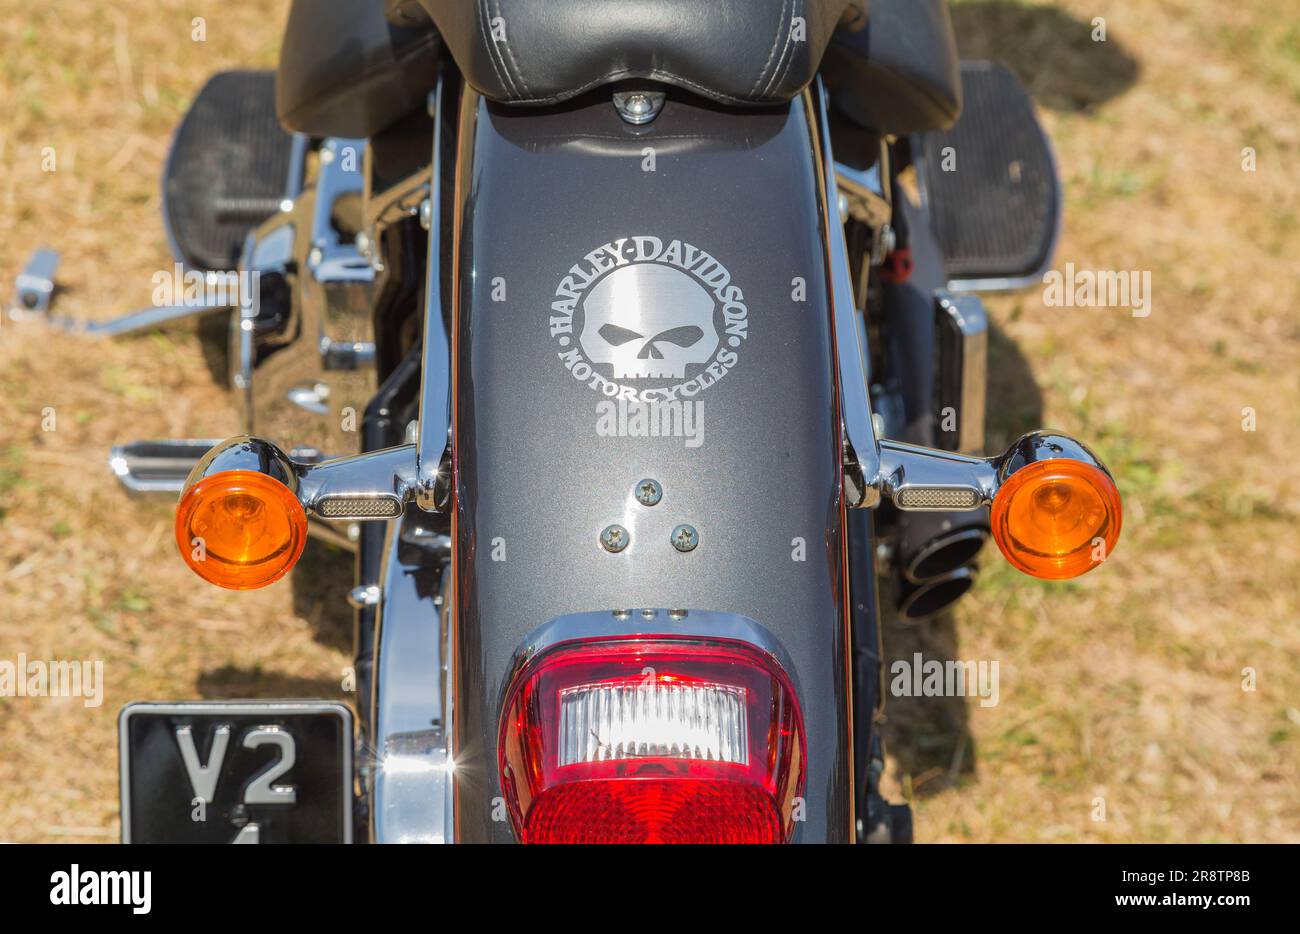 Nahaufnahme eines hinteren Schmutzfängers eines Harley Davidson Motorrads mit dem legendären Namen und einem stilisierten Totenkopfmotiv. Biker, Freiheit oder Roadtrip-Konzept. Stockfoto